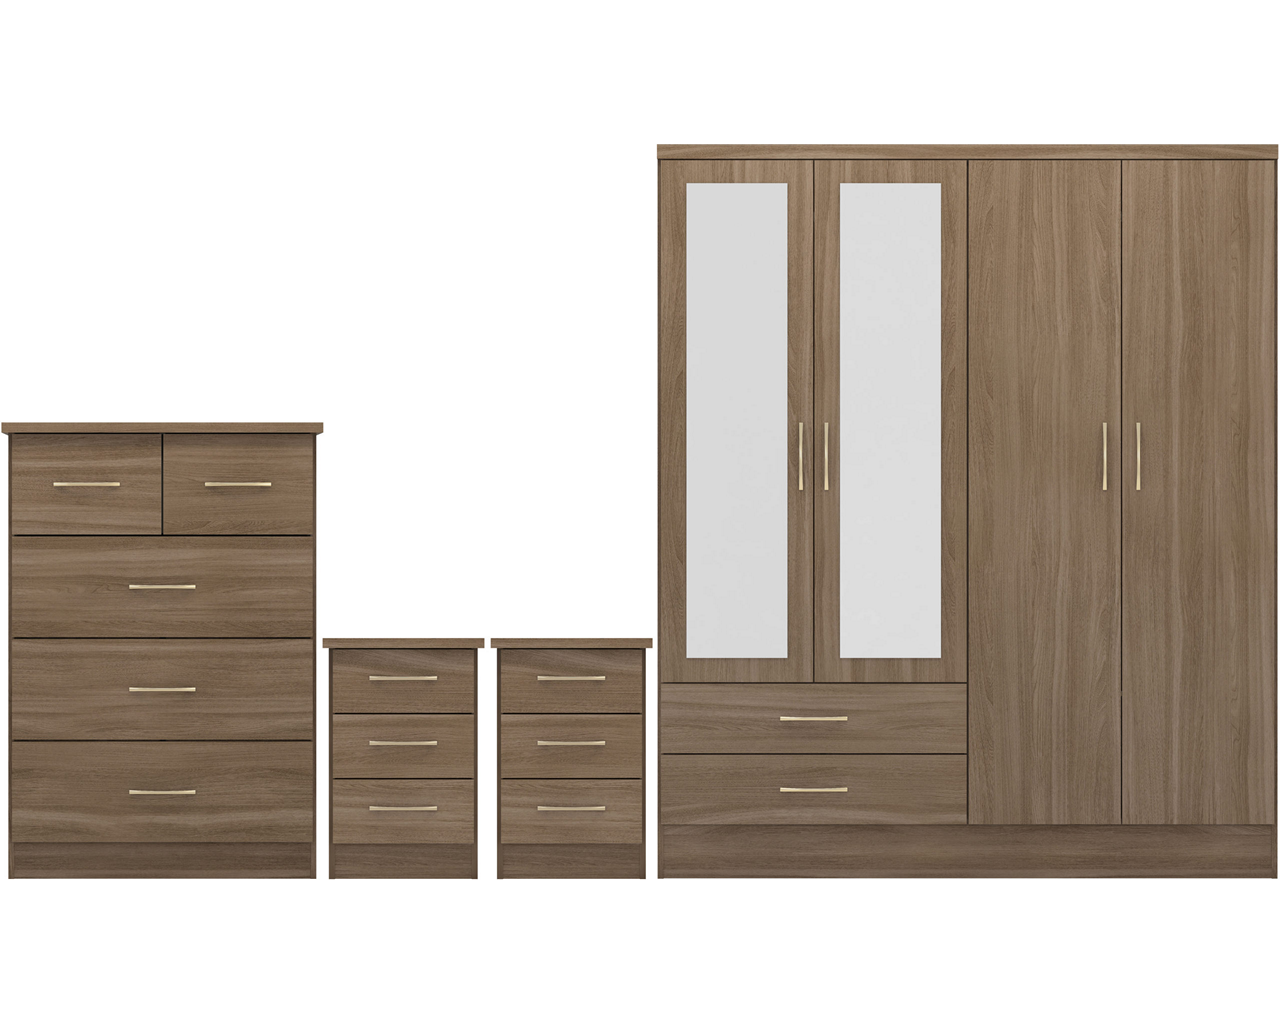 nevada-4-door-2-drawer-mirrored-wardrobe-bedroom-set - 6